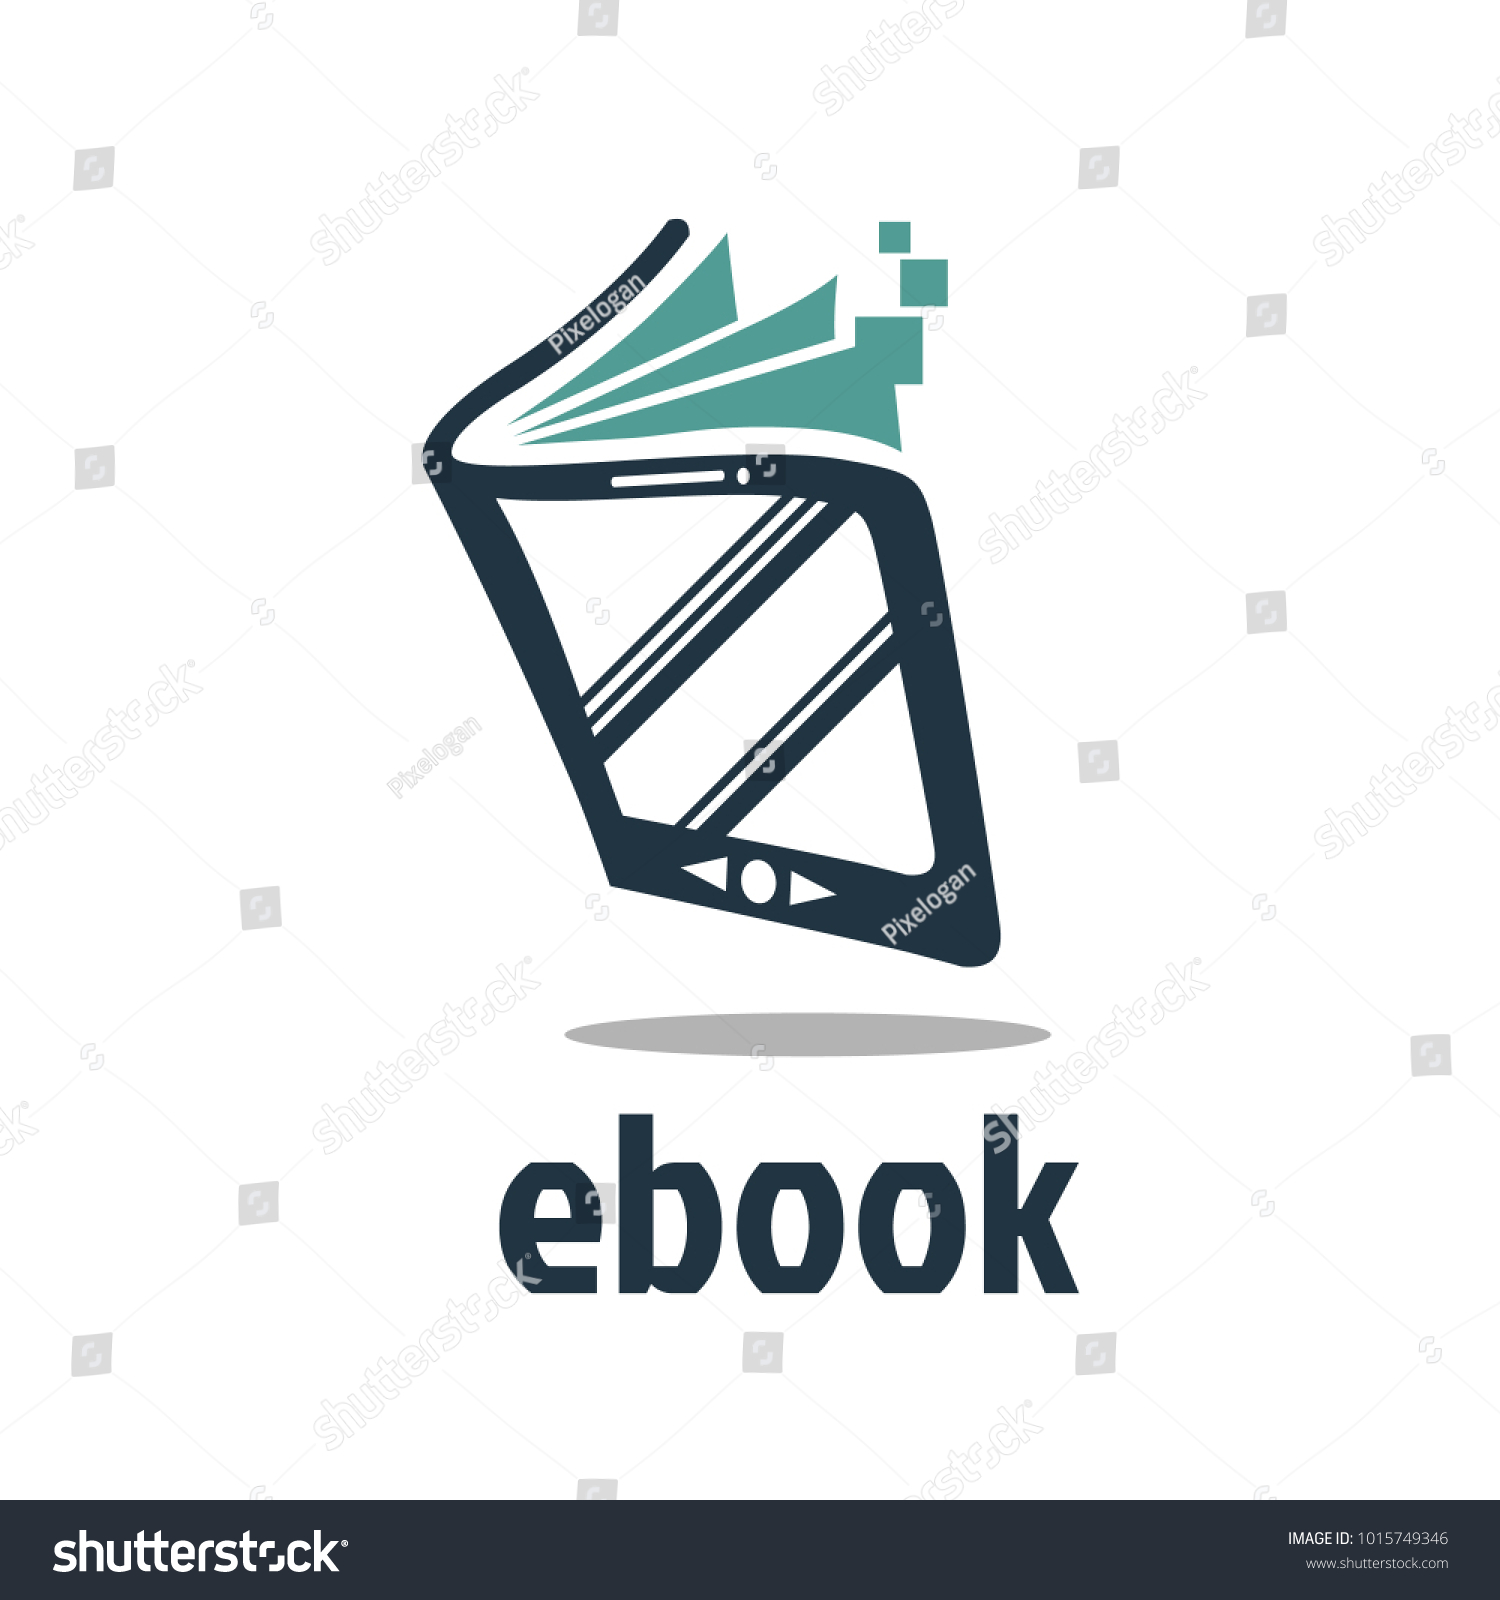 stock-vector-ebook-logo-vector-1015749346